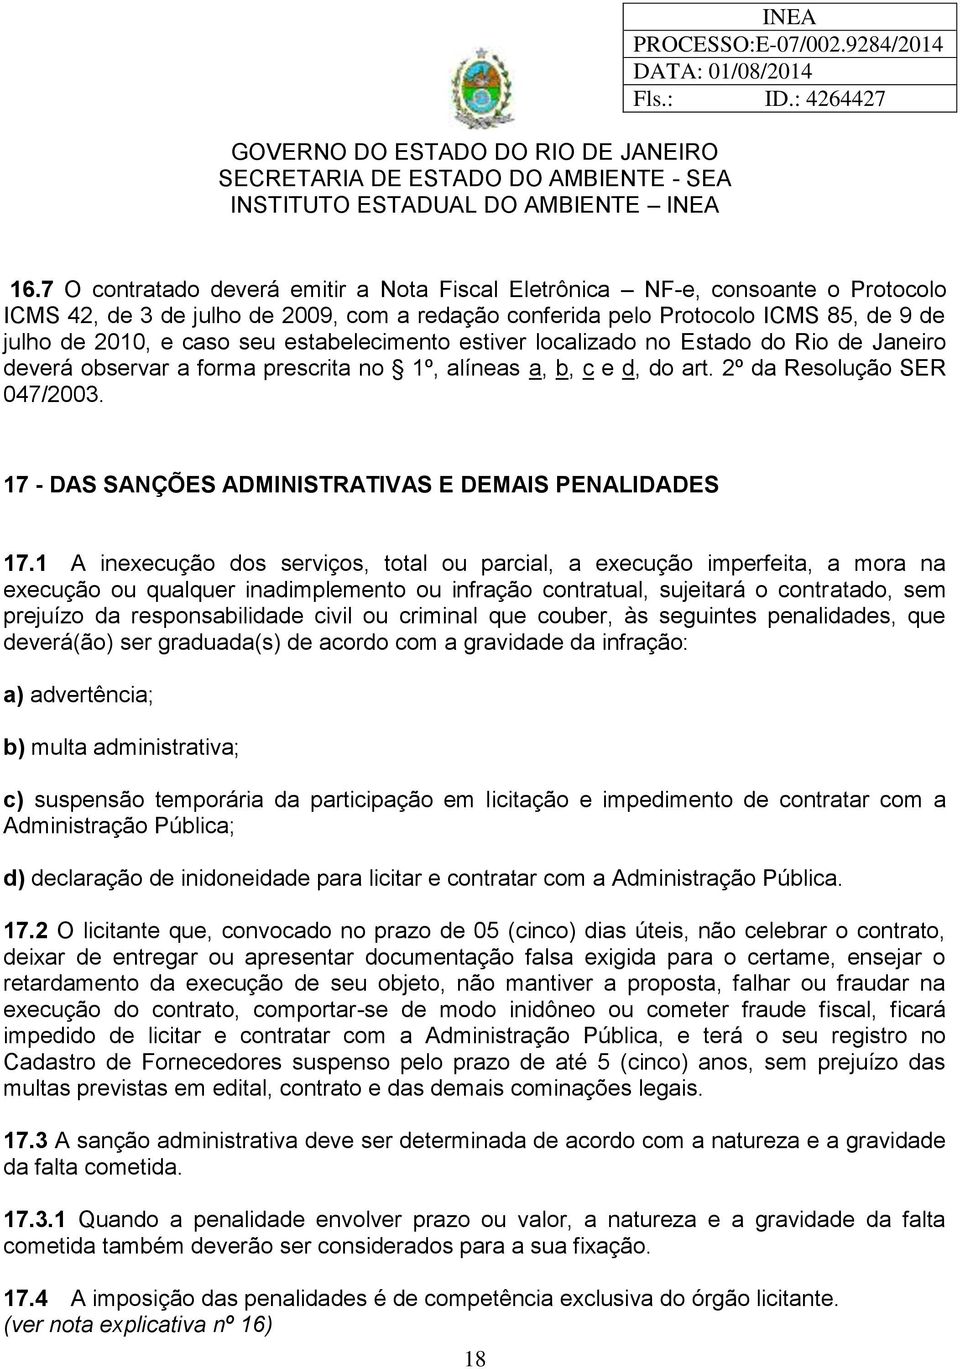 estabelecimento estiver localizado no Estado do Rio de Janeiro deverá observar a forma prescrita no 1º, alíneas a, b, c e d, do art. 2º da Resolução SER 047/2003.